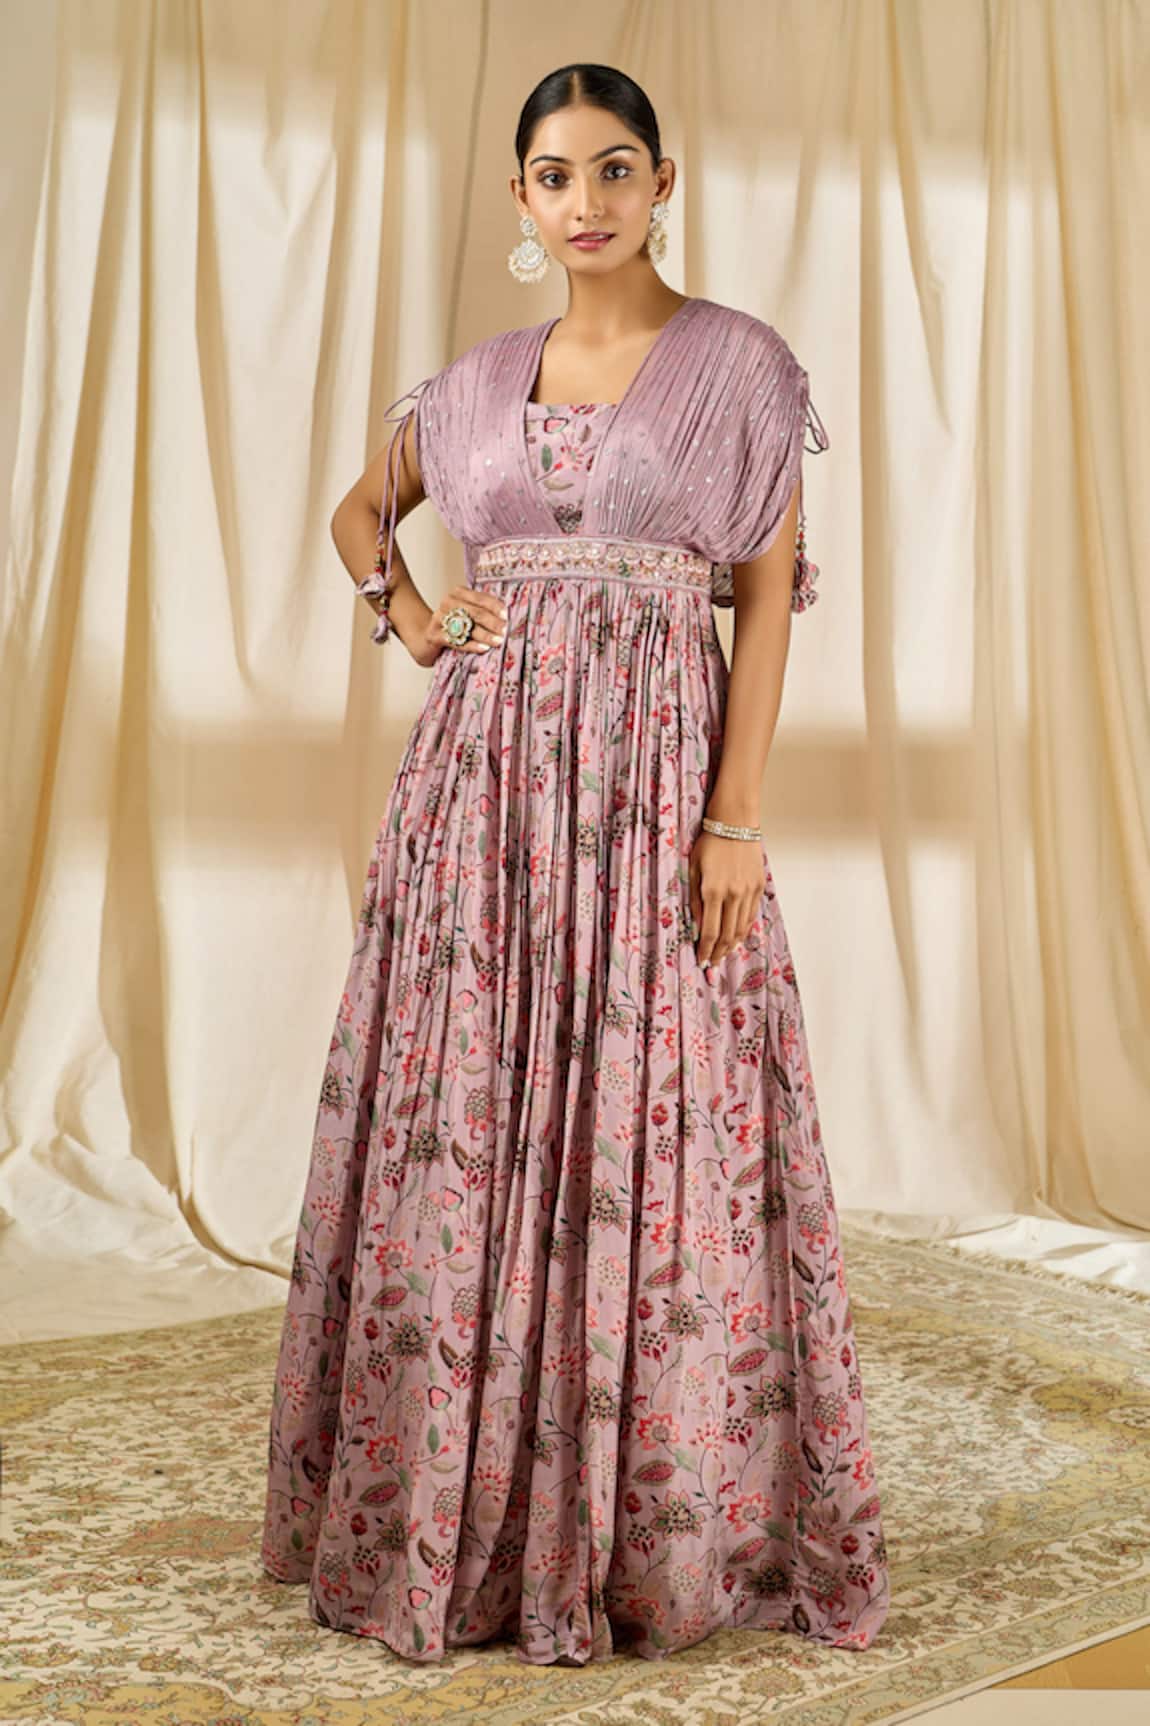 Alaya Advani Floral Print Gown